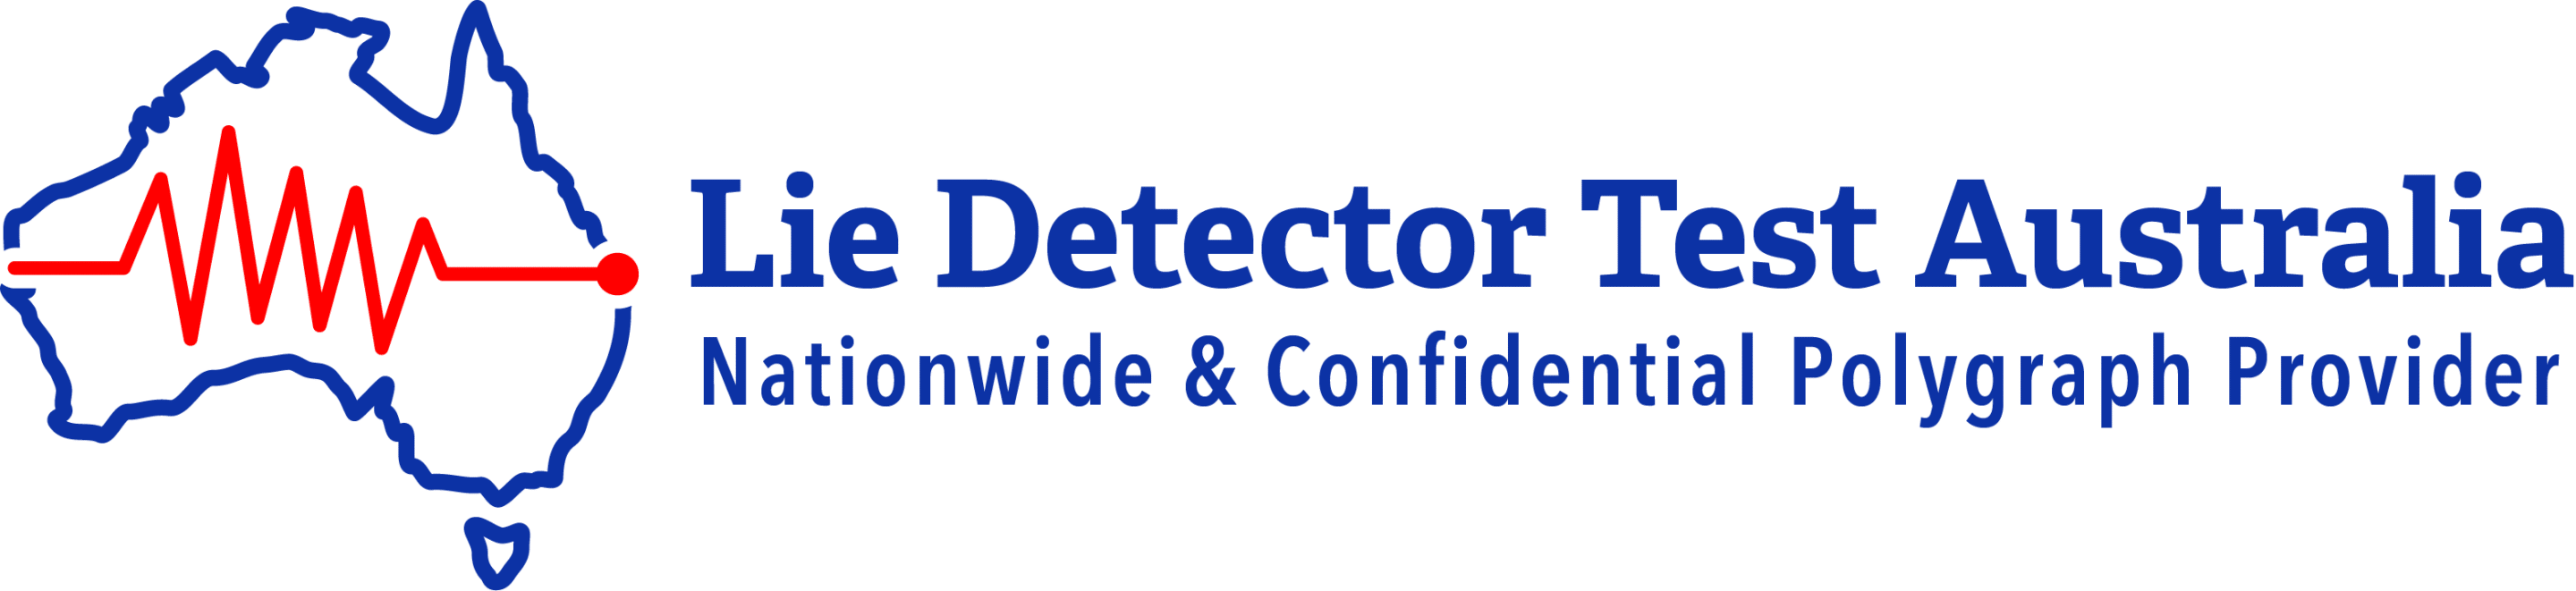 Lie Detector Test Australia